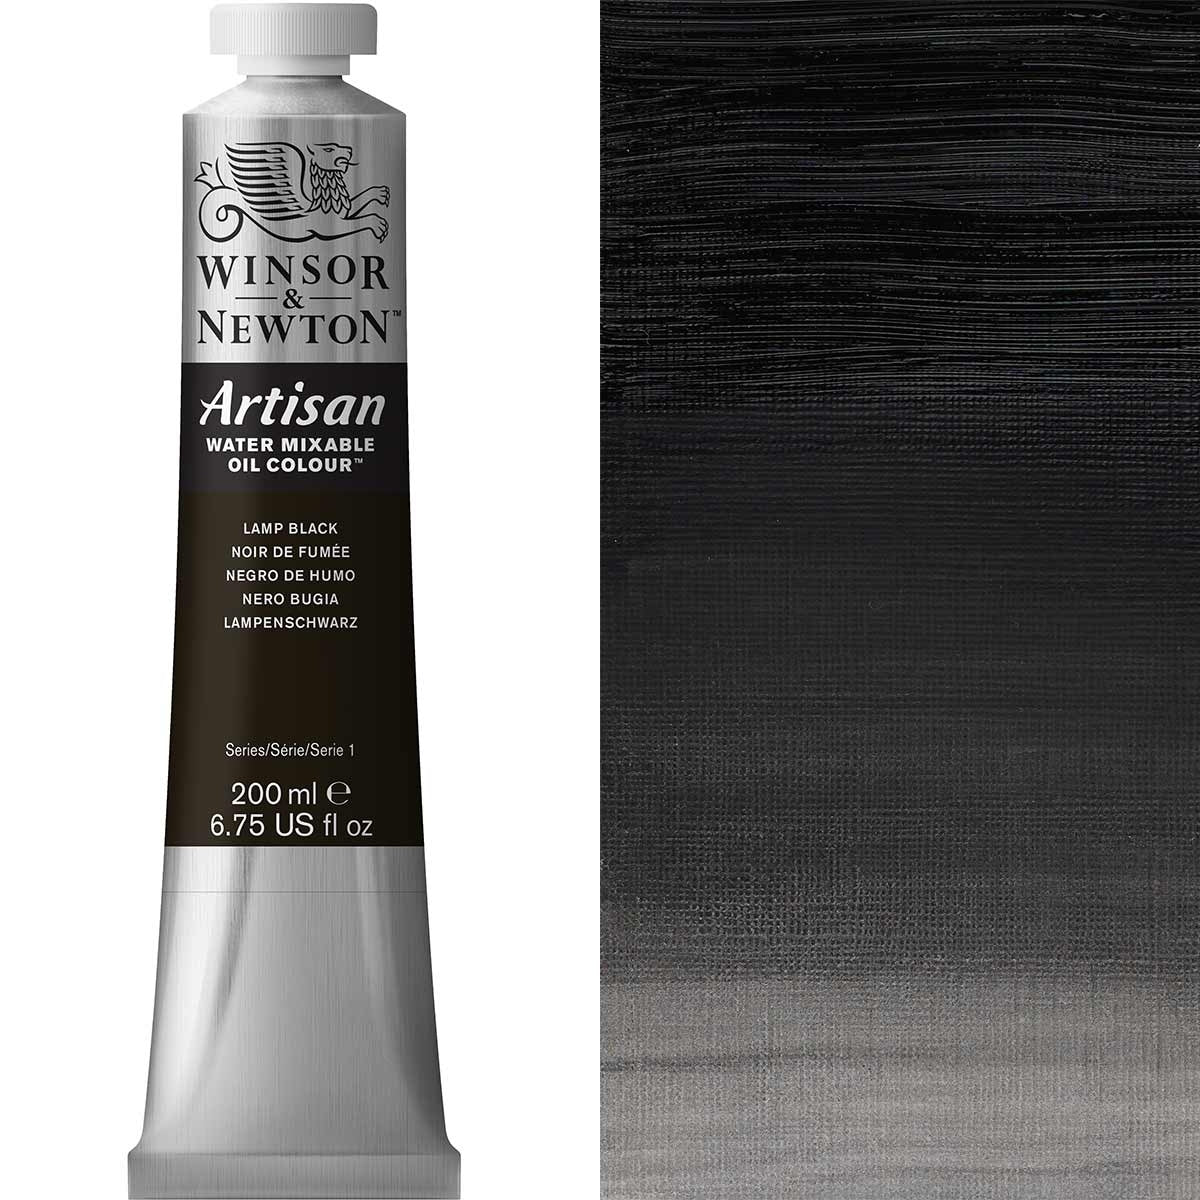 Winsor e Newton - Watermixable di colore olio artigianale - 200 ml - lampada nera